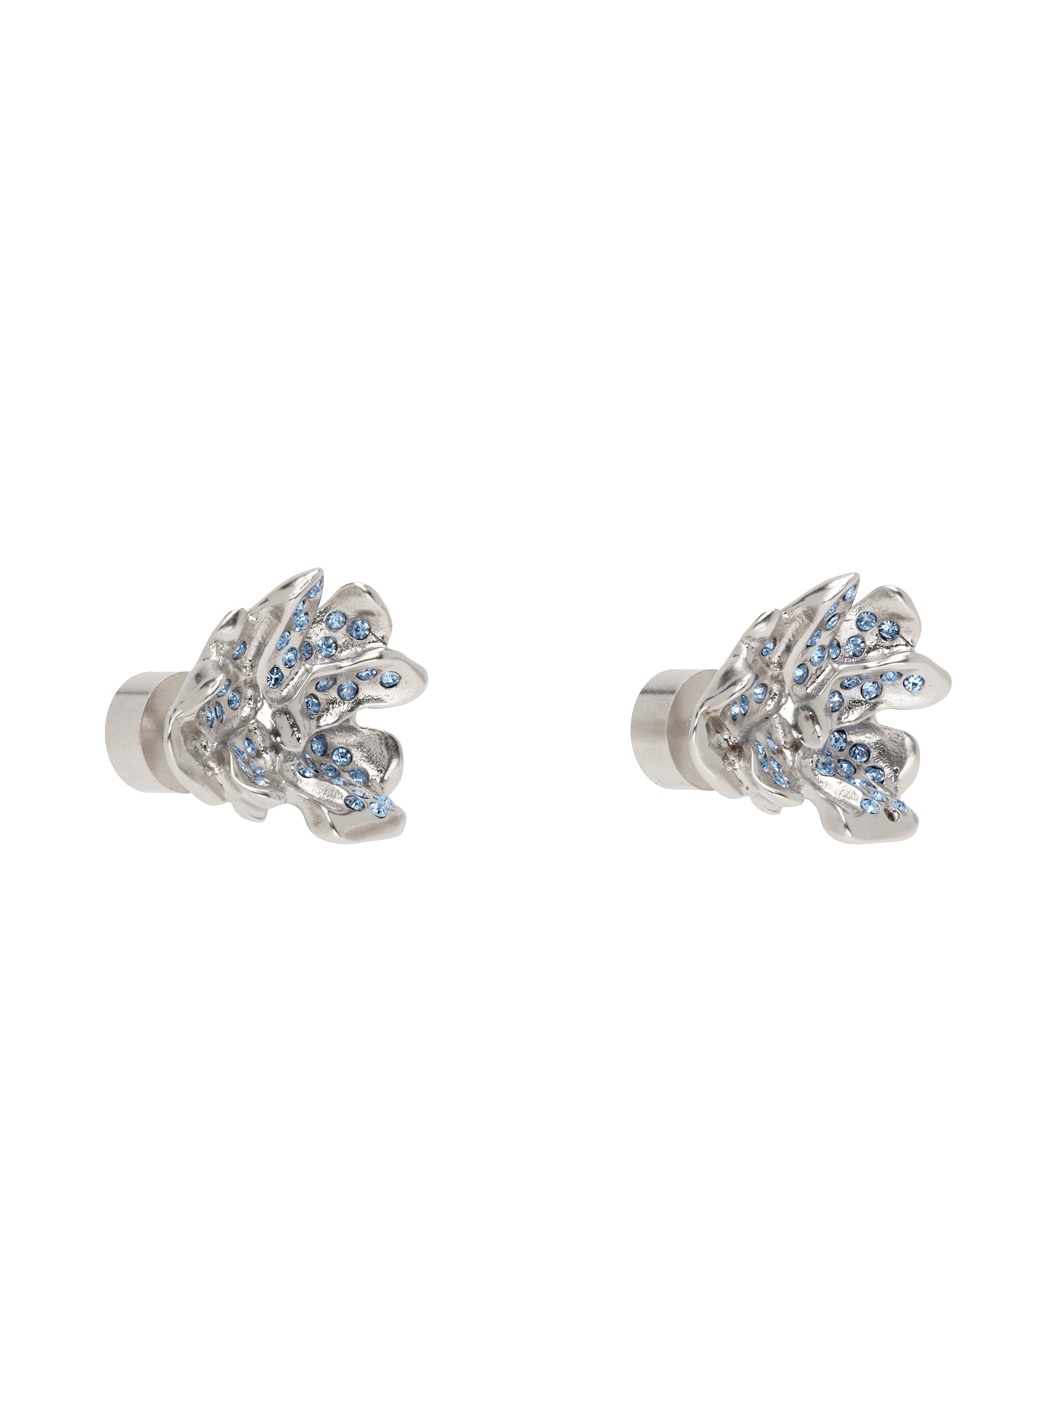 Silver Metal Flower Stud Earrings - 2